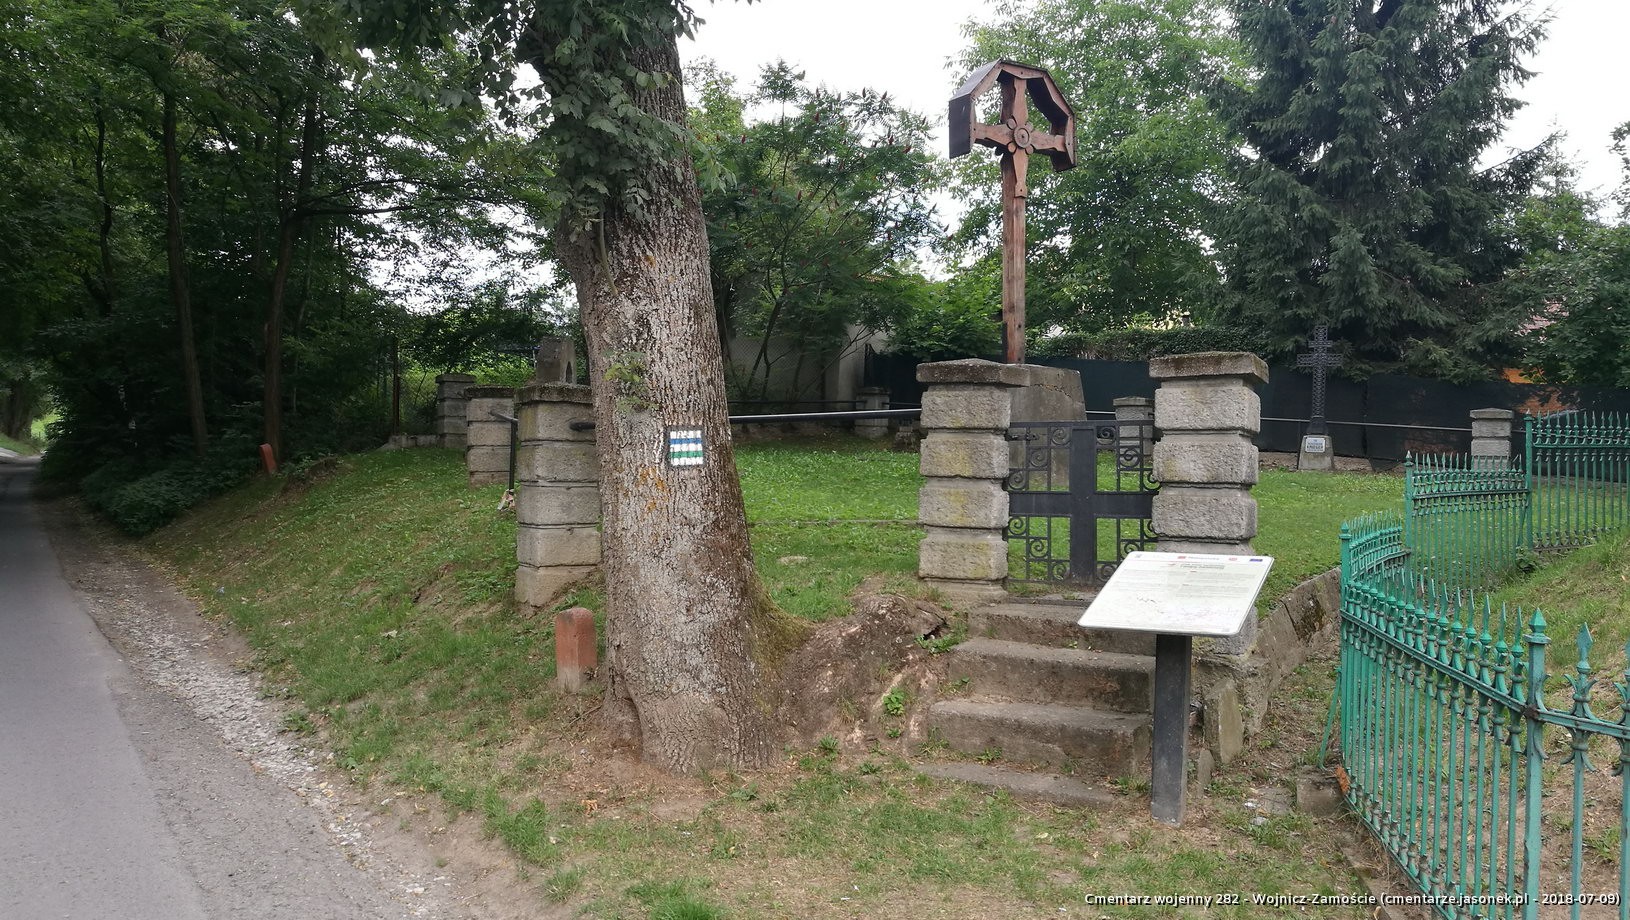 Cmentarz wojenny z I wojny nr 282 - Wojnicz-Zamoście